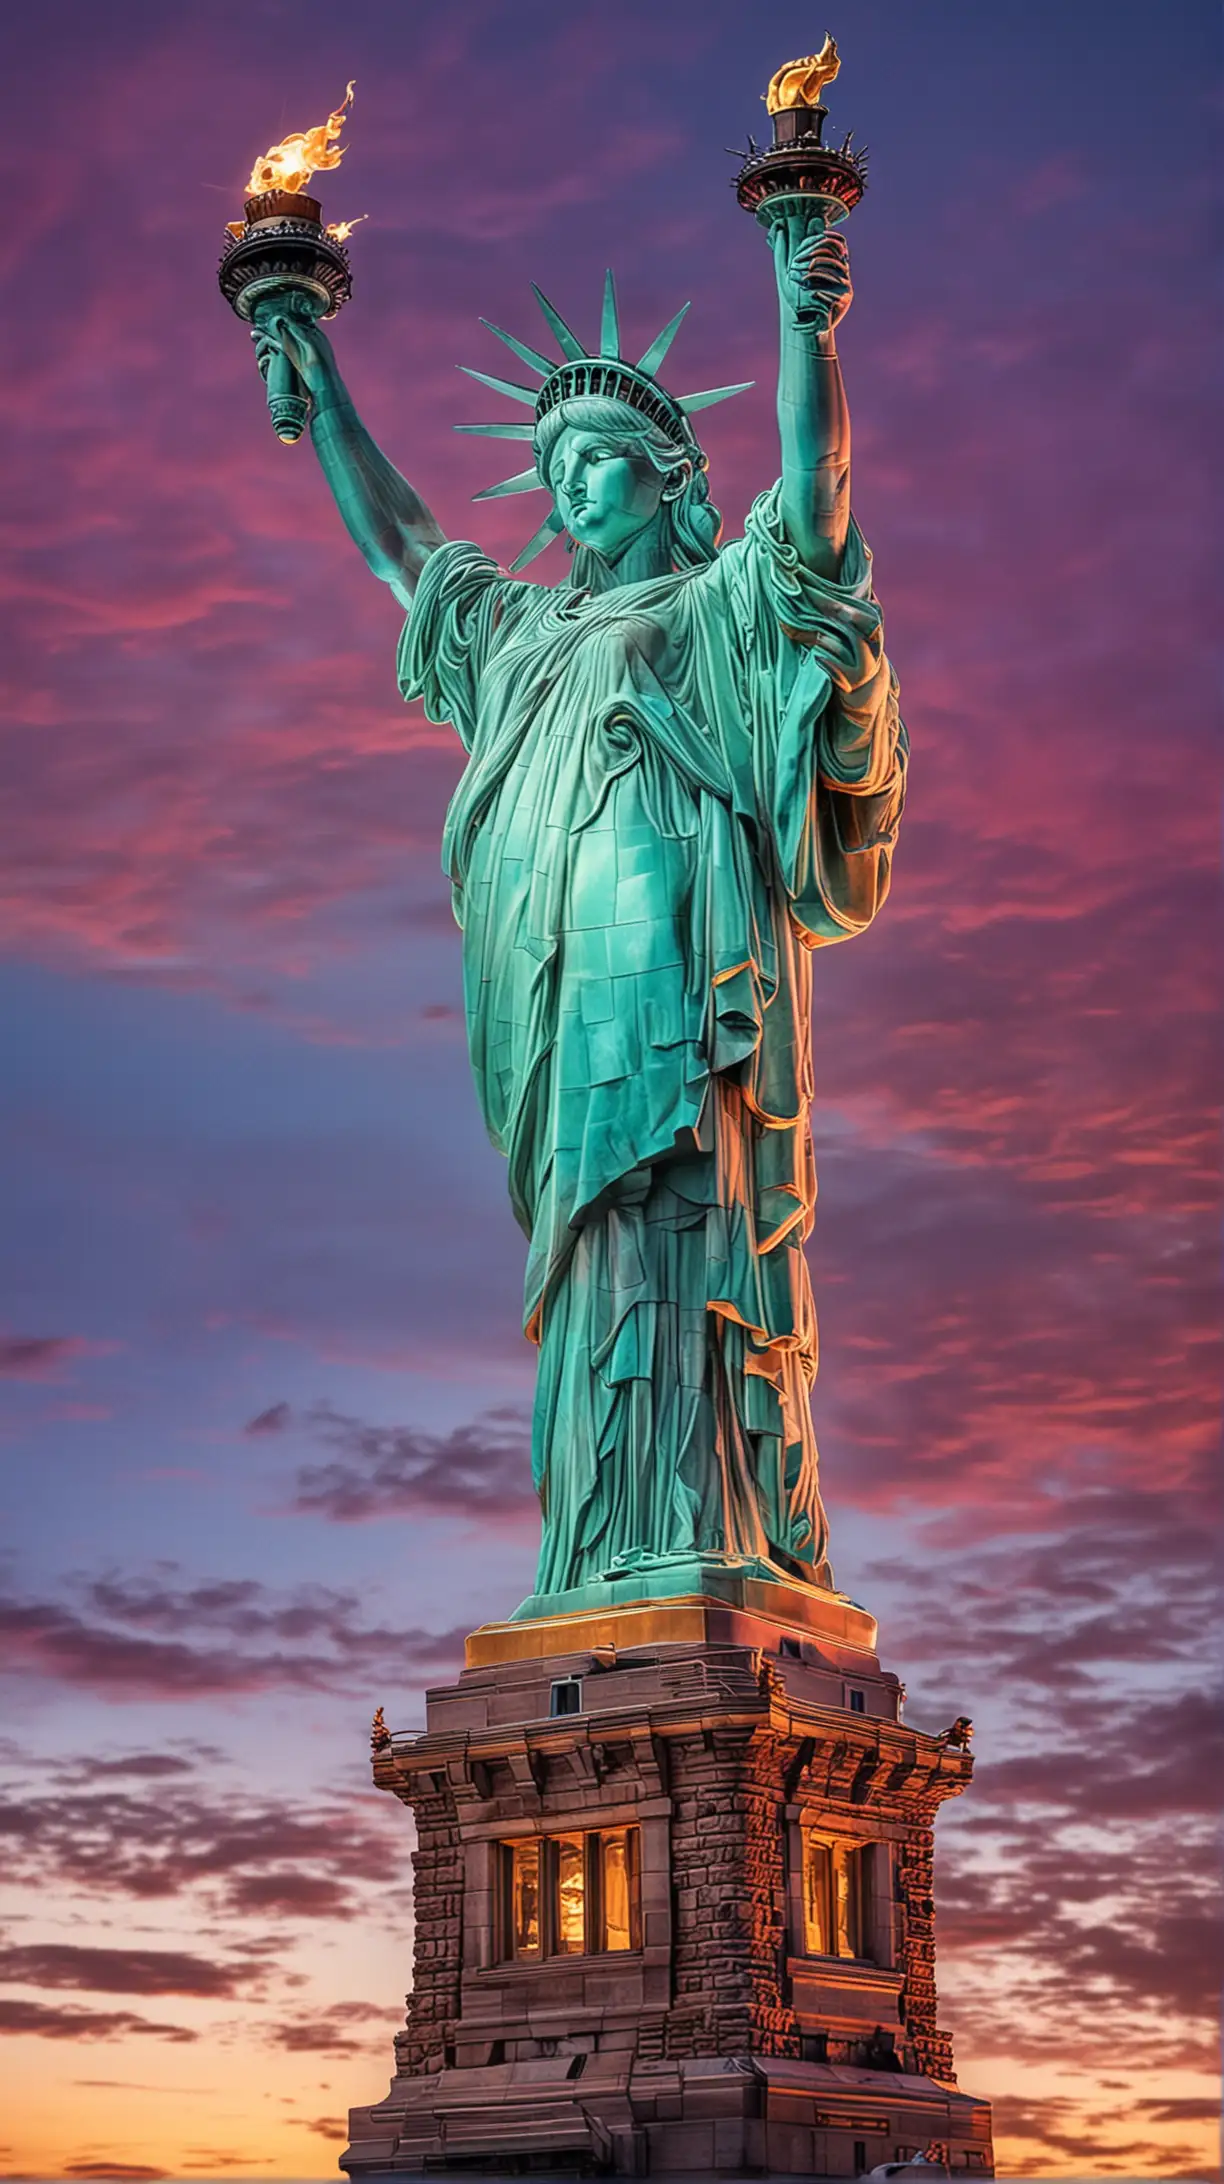 Vibrant Statue of Liberty A Magical Representation in Vivid Colors